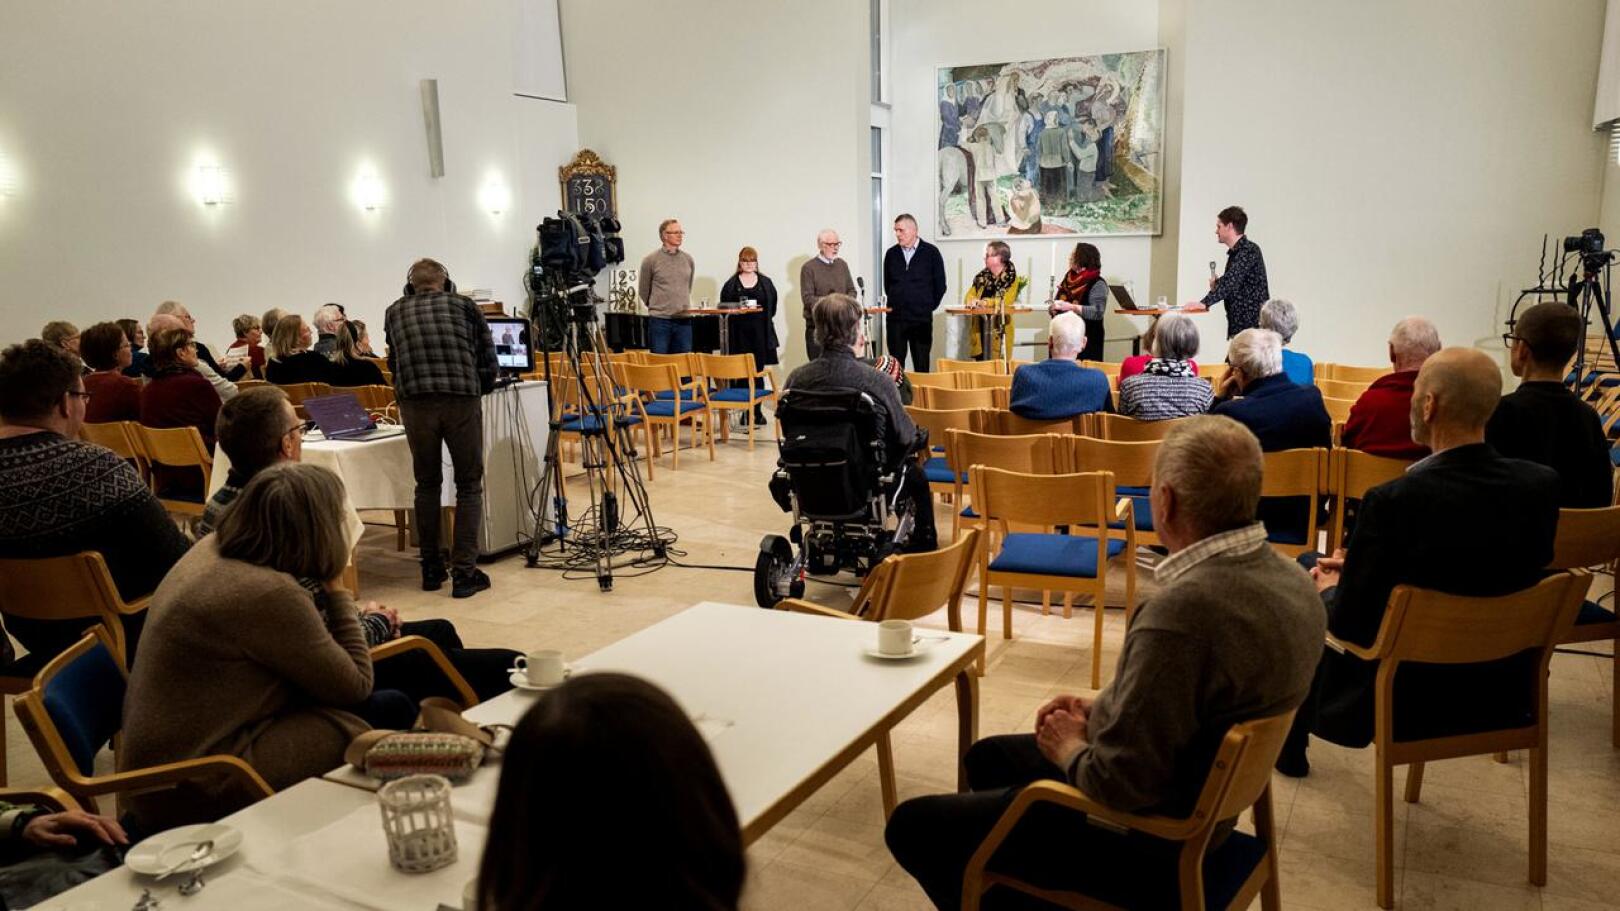 Panelistit Mika Sarkkinen, Sonja Pääsukene, Hannu Kuusniemi, Heimo Fiskaali, Maarit Aspegren ja Marita Kaakinen. Tilaisuuden johti toimittaja Jouni Nikula.